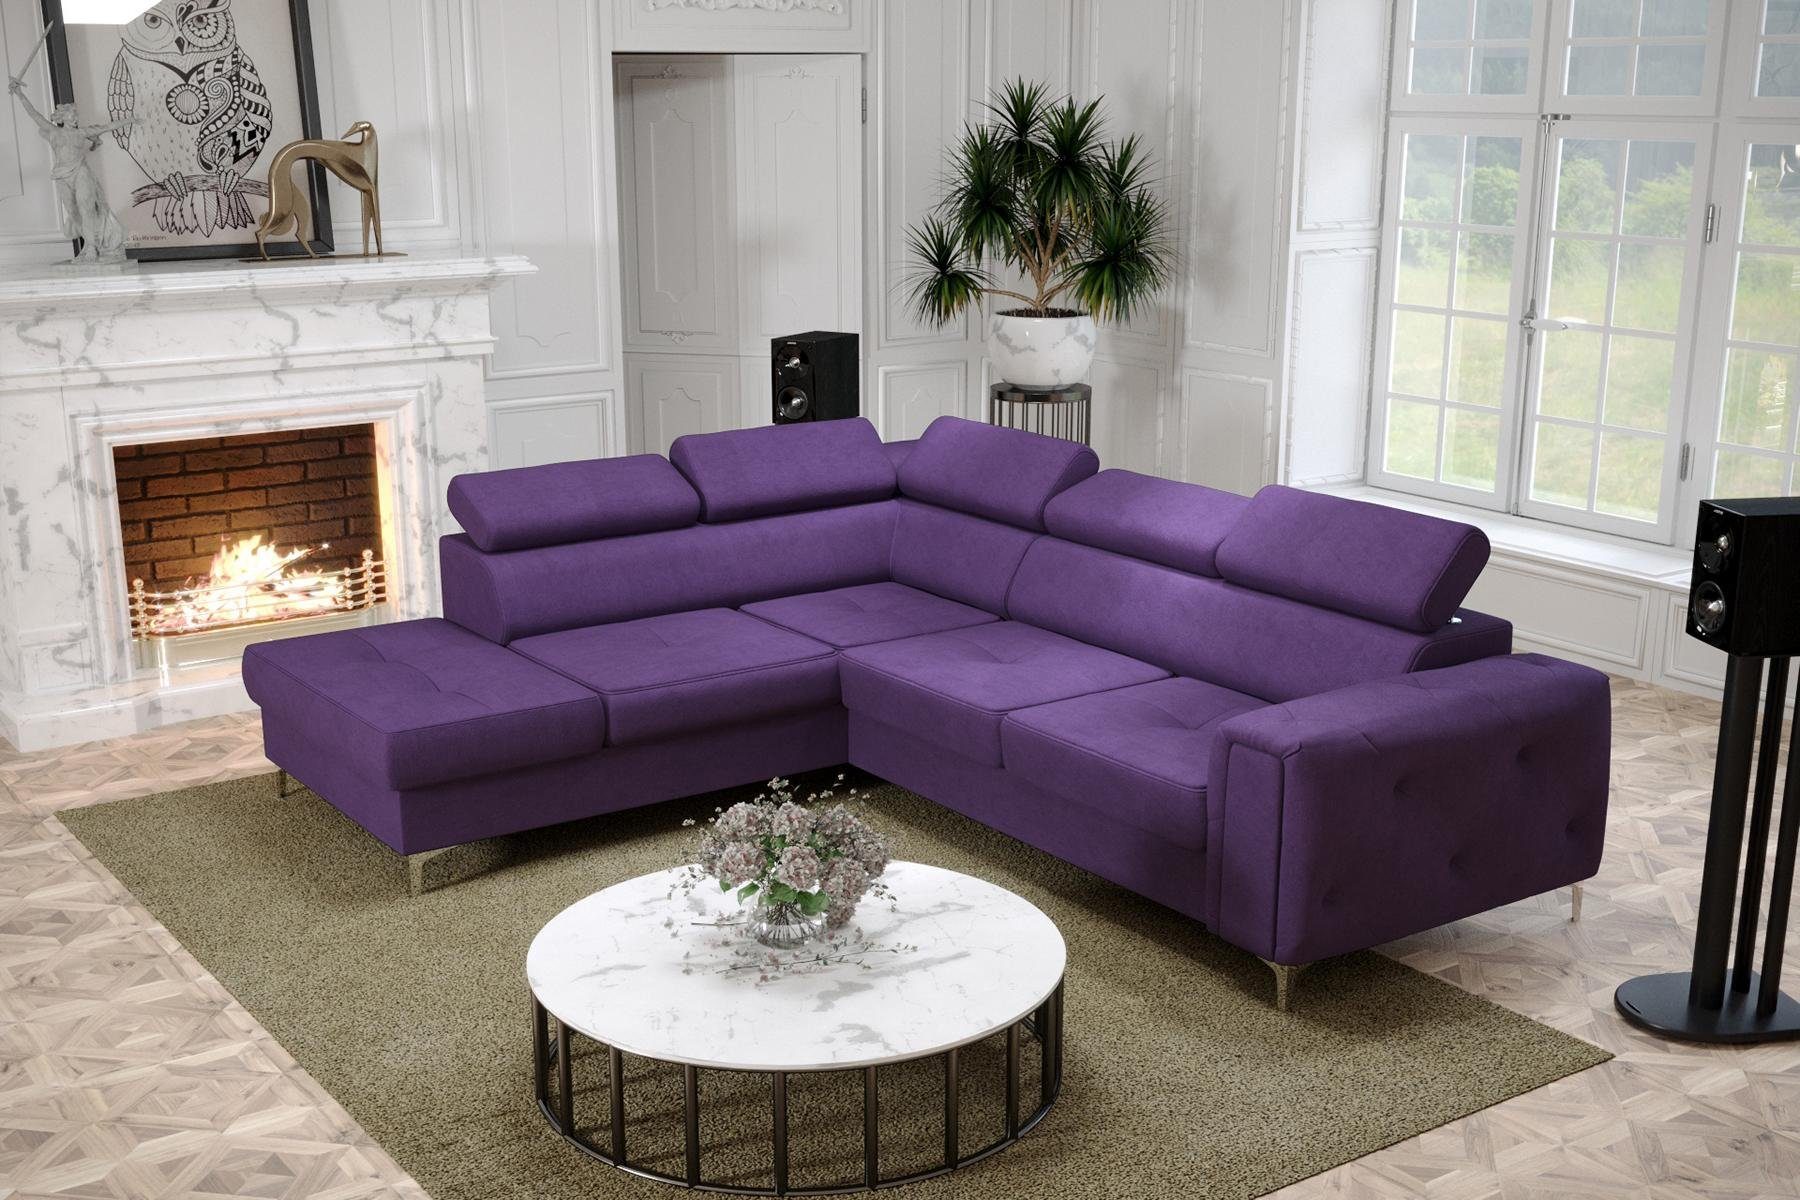 JVmoebel Ecksofa, Design Ecksofa L-Form Couch Polsterung Luxus Wohnzimmer Soft Lila